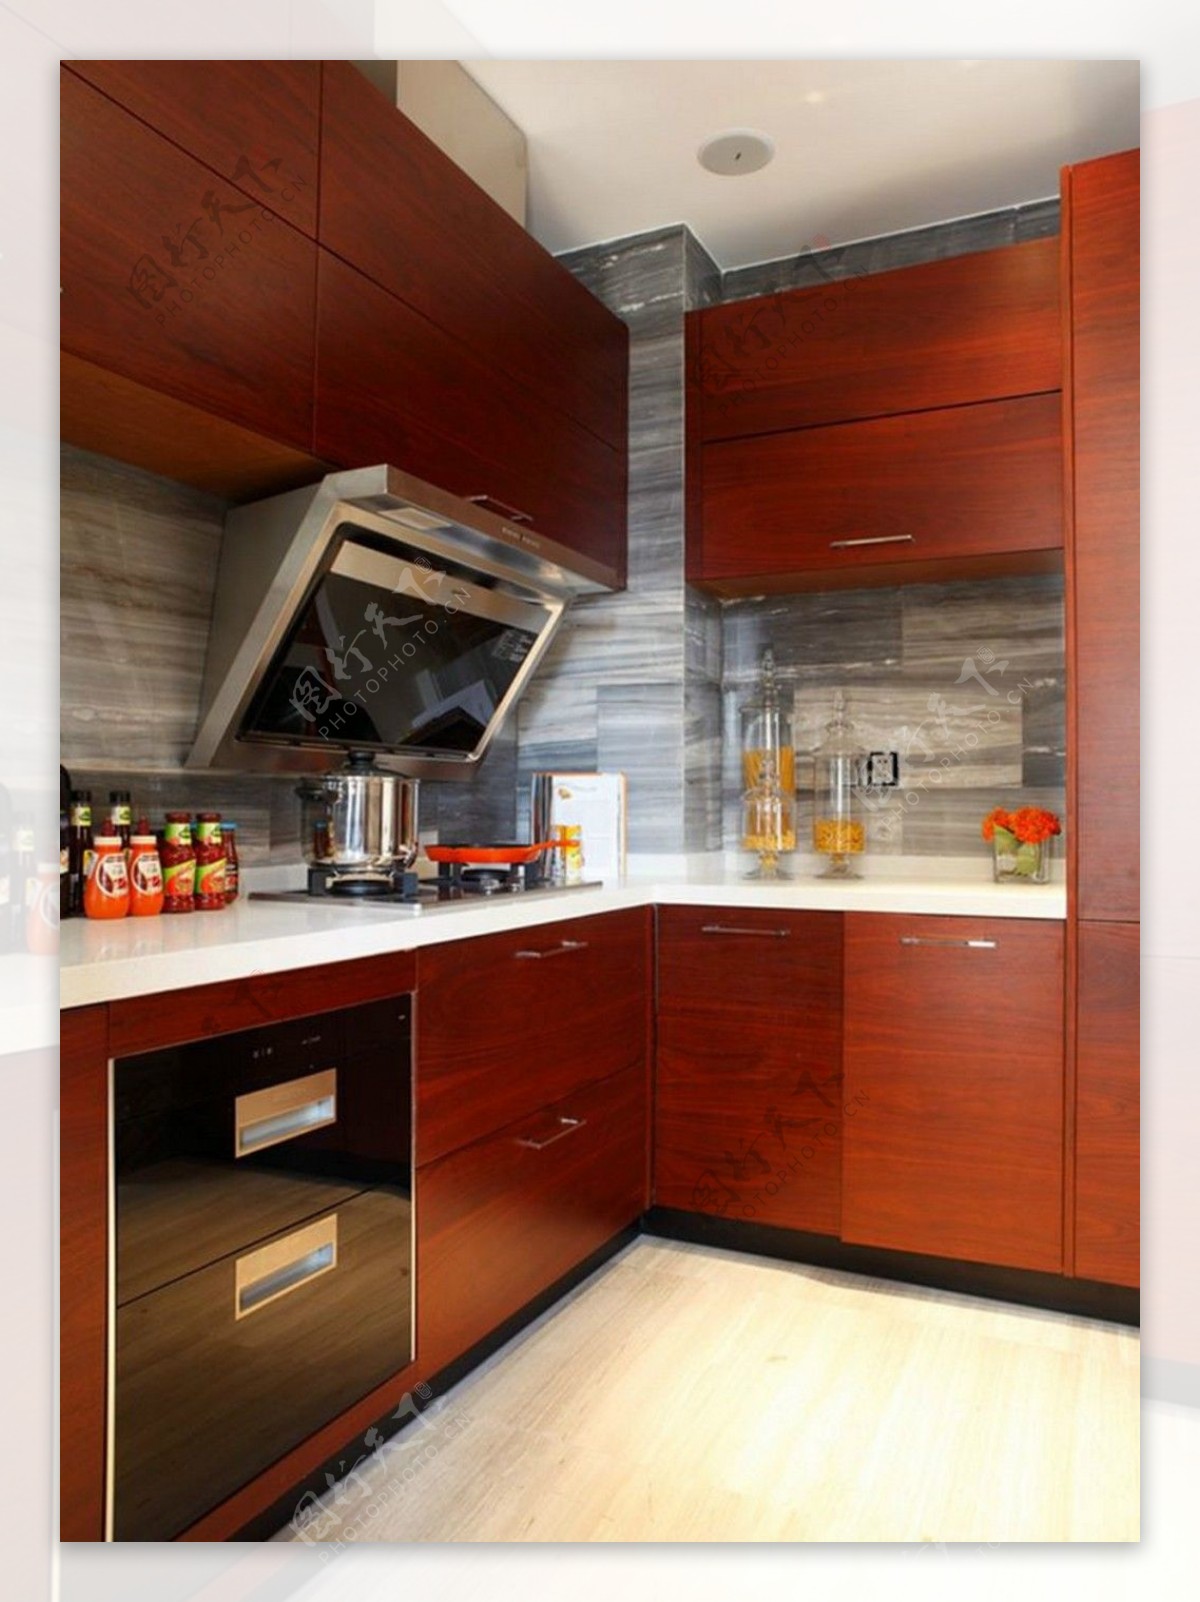 现代简约风室内设计厨房红木橱柜效果图JPG